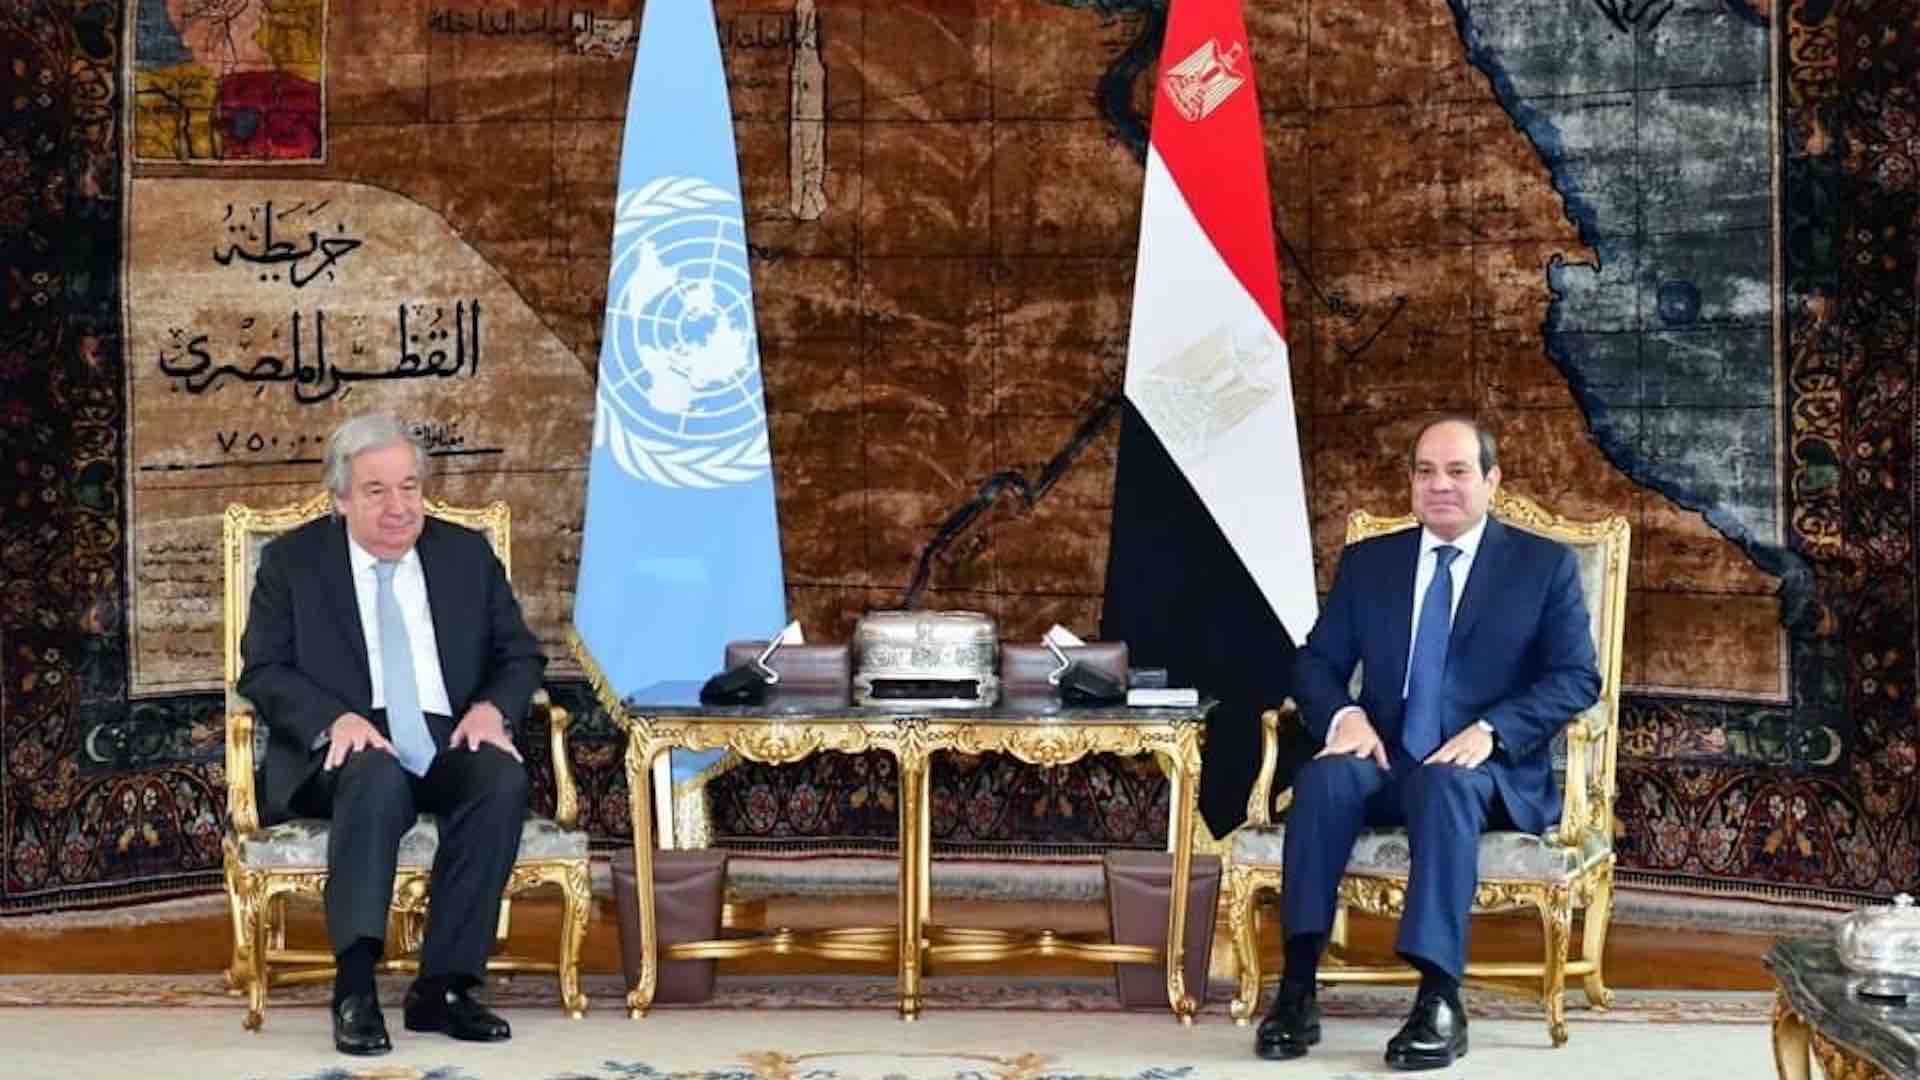 Mısır Devlet Başkanı Abdülfettah El-Sisi ve BM Genel Sekreteri Antonio Guterres, Gazze Şeridi'nde ortaya çıkan son olaylara dikkat çekerek, önemli bölgesel ve uluslararası gelişmelere ilişkin önemli bir tartışmaya katıldı. Kahire'de düzenlenen toplantıda devam eden krizle ilgili acil konular ele alındı. Cumhurbaşkanı Sisi, bazı ülkelerin BM Filistinli Mültecilere Yardım ve Bayındırlık Ajansı'na (UNRWA) verdiği desteğin geri çekilmesinden duyduğu derin endişeyi dile getirerek, BM Güvenlik Konseyi'nin tırmanan duruma çözüm bulma sorumluluğunun altını çizdi. Bu tür eylemleri "masum Filistinlilerin toplu olarak cezalandırılması" ile eşdeğer olarak nitelendirdi ve onların kötü durumunu hafifletmek için kolektif bir çaba gösterilmesi çağrısında bulundu. Acil eylem stratejilerinin ana hatlarını çizen Cumhurbaşkanı Sisi, acil ateşkes ihtiyacını, tutukluların değişimini kolaylaştırmayı ve Gazze'deki insanların acılarını hafifletmek için insani yardımın derhal teslim edilmesini vurguladı. Yardımın kara yoluyla etkili bir şekilde dağıtılmasını sağlamak için ilgili BM kuruluşlarıyla koordinasyonun önemini vurguladı ve aynı zamanda özellikle erişimin ciddi şekilde kısıtlandığı Gazze'nin kuzey bölgelerine havadan yardım yapılabilirliğini de göz önünde bulundurdu. Her iki lider de durumun ciddiyetini kabul etti ve daha fazla gerilimin önlenmesinin kritik önemini vurguladı. Filistinlileri yerinden etme girişimlerini kararlı bir şekilde reddettiler ve Filistin Refah'ındaki askeri operasyonlara karşı uyarıda bulunarak, vahim insani kriz üzerindeki potansiyel felaket sonuçlarını öne sürdüler. Cumhurbaşkanı Sisi ile Genel Sekreter Guterres arasındaki toplantı, Gazze Şeridi krizinin çözümü için uluslararası işbirliğine duyulan acil ihtiyacın altını çiziyor. Hayatlar tehlikedeyken ve insani koşullar kötüleşirken, Filistinlilerin acısını hafifletmek ve çatışmaya sürdürülebilir bir çözüm bulmak için uluslararası toplumun hızlı ve kararlı bir şekilde harekete geçmesi zorunludur.